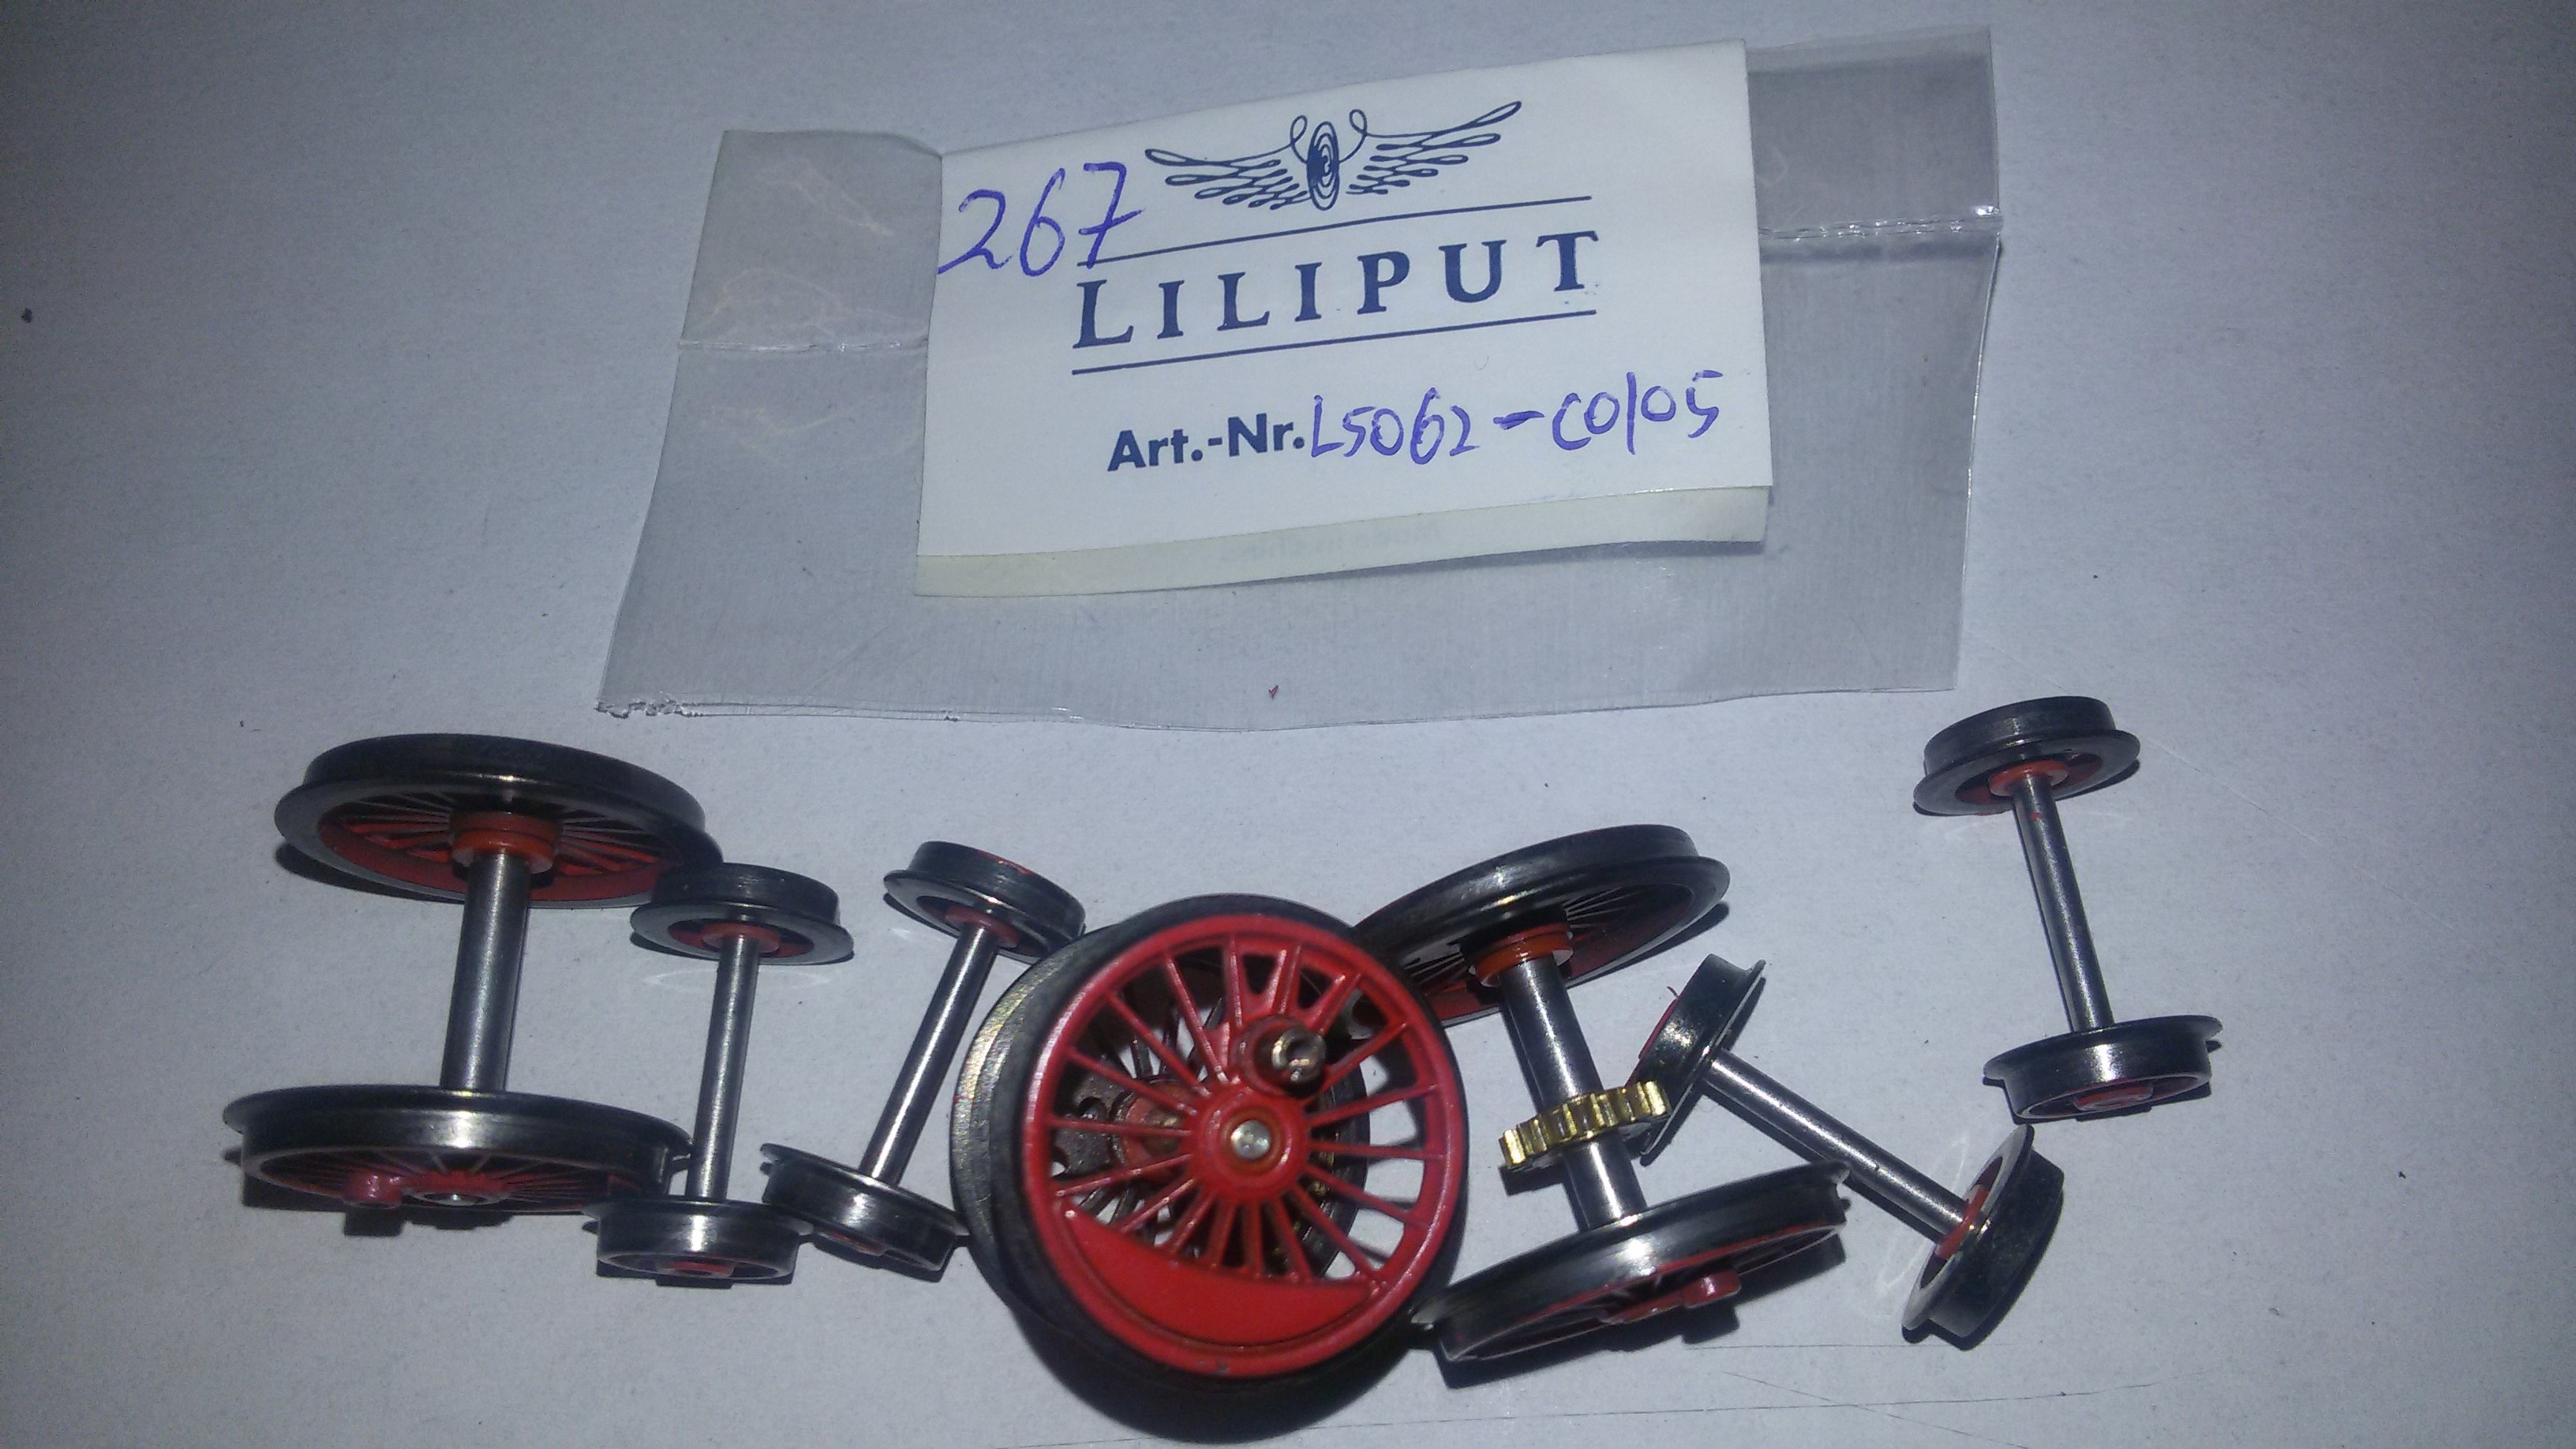 *LO 491* Liliput Ersatzteil L53810506 Set Handlauf für 238105 